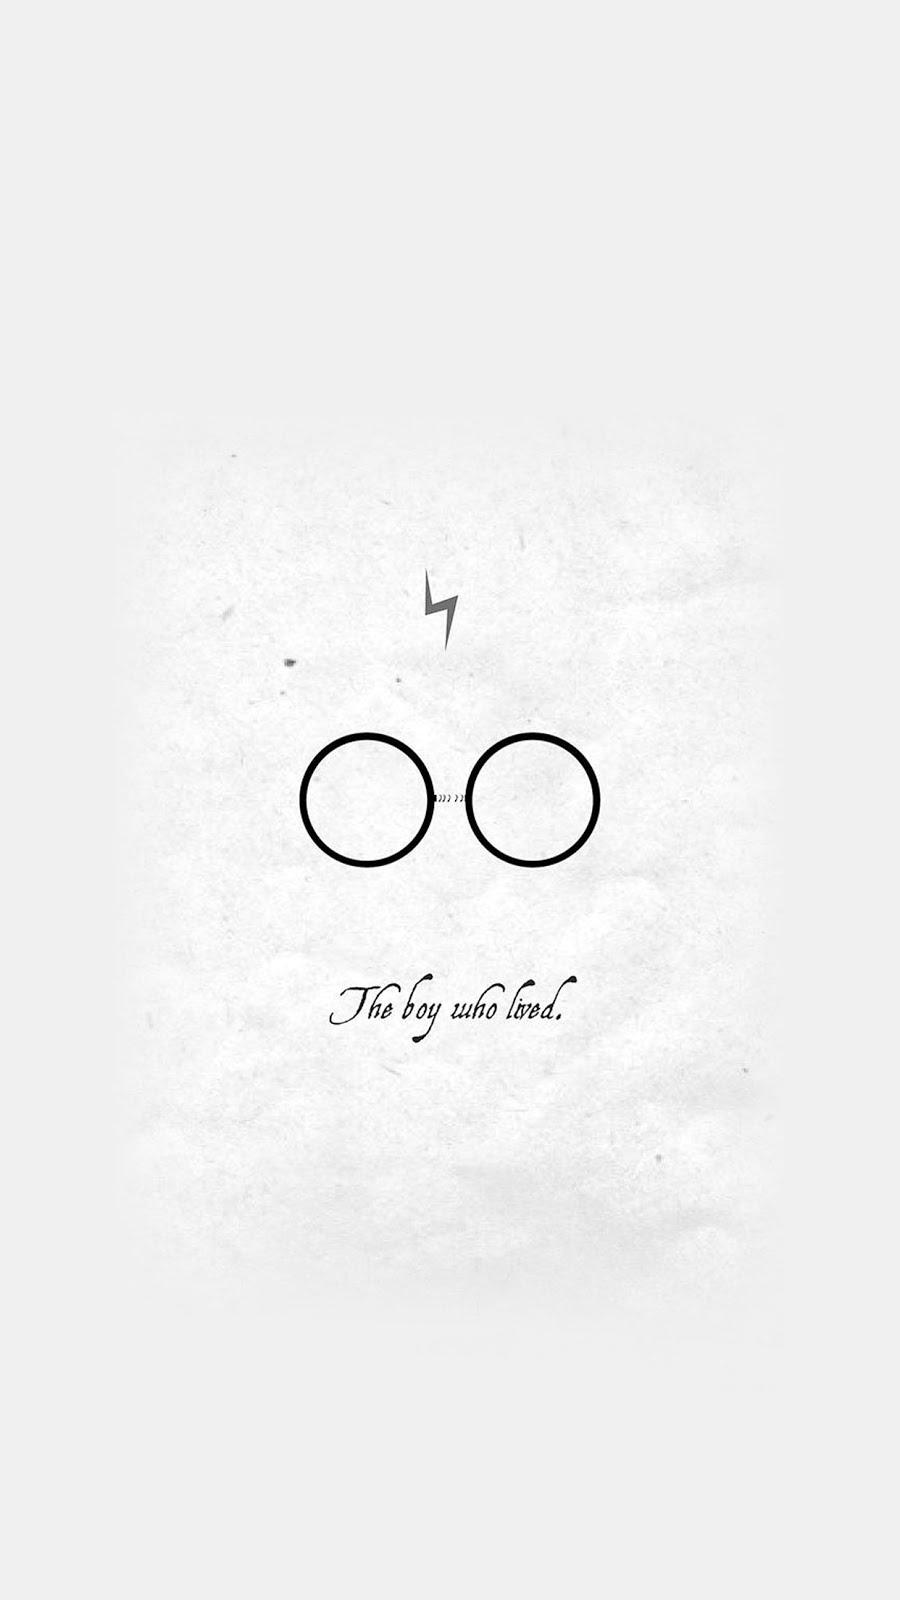 Harry Potter Logos Wallpaper by JonTylerthe27th on DeviantArt